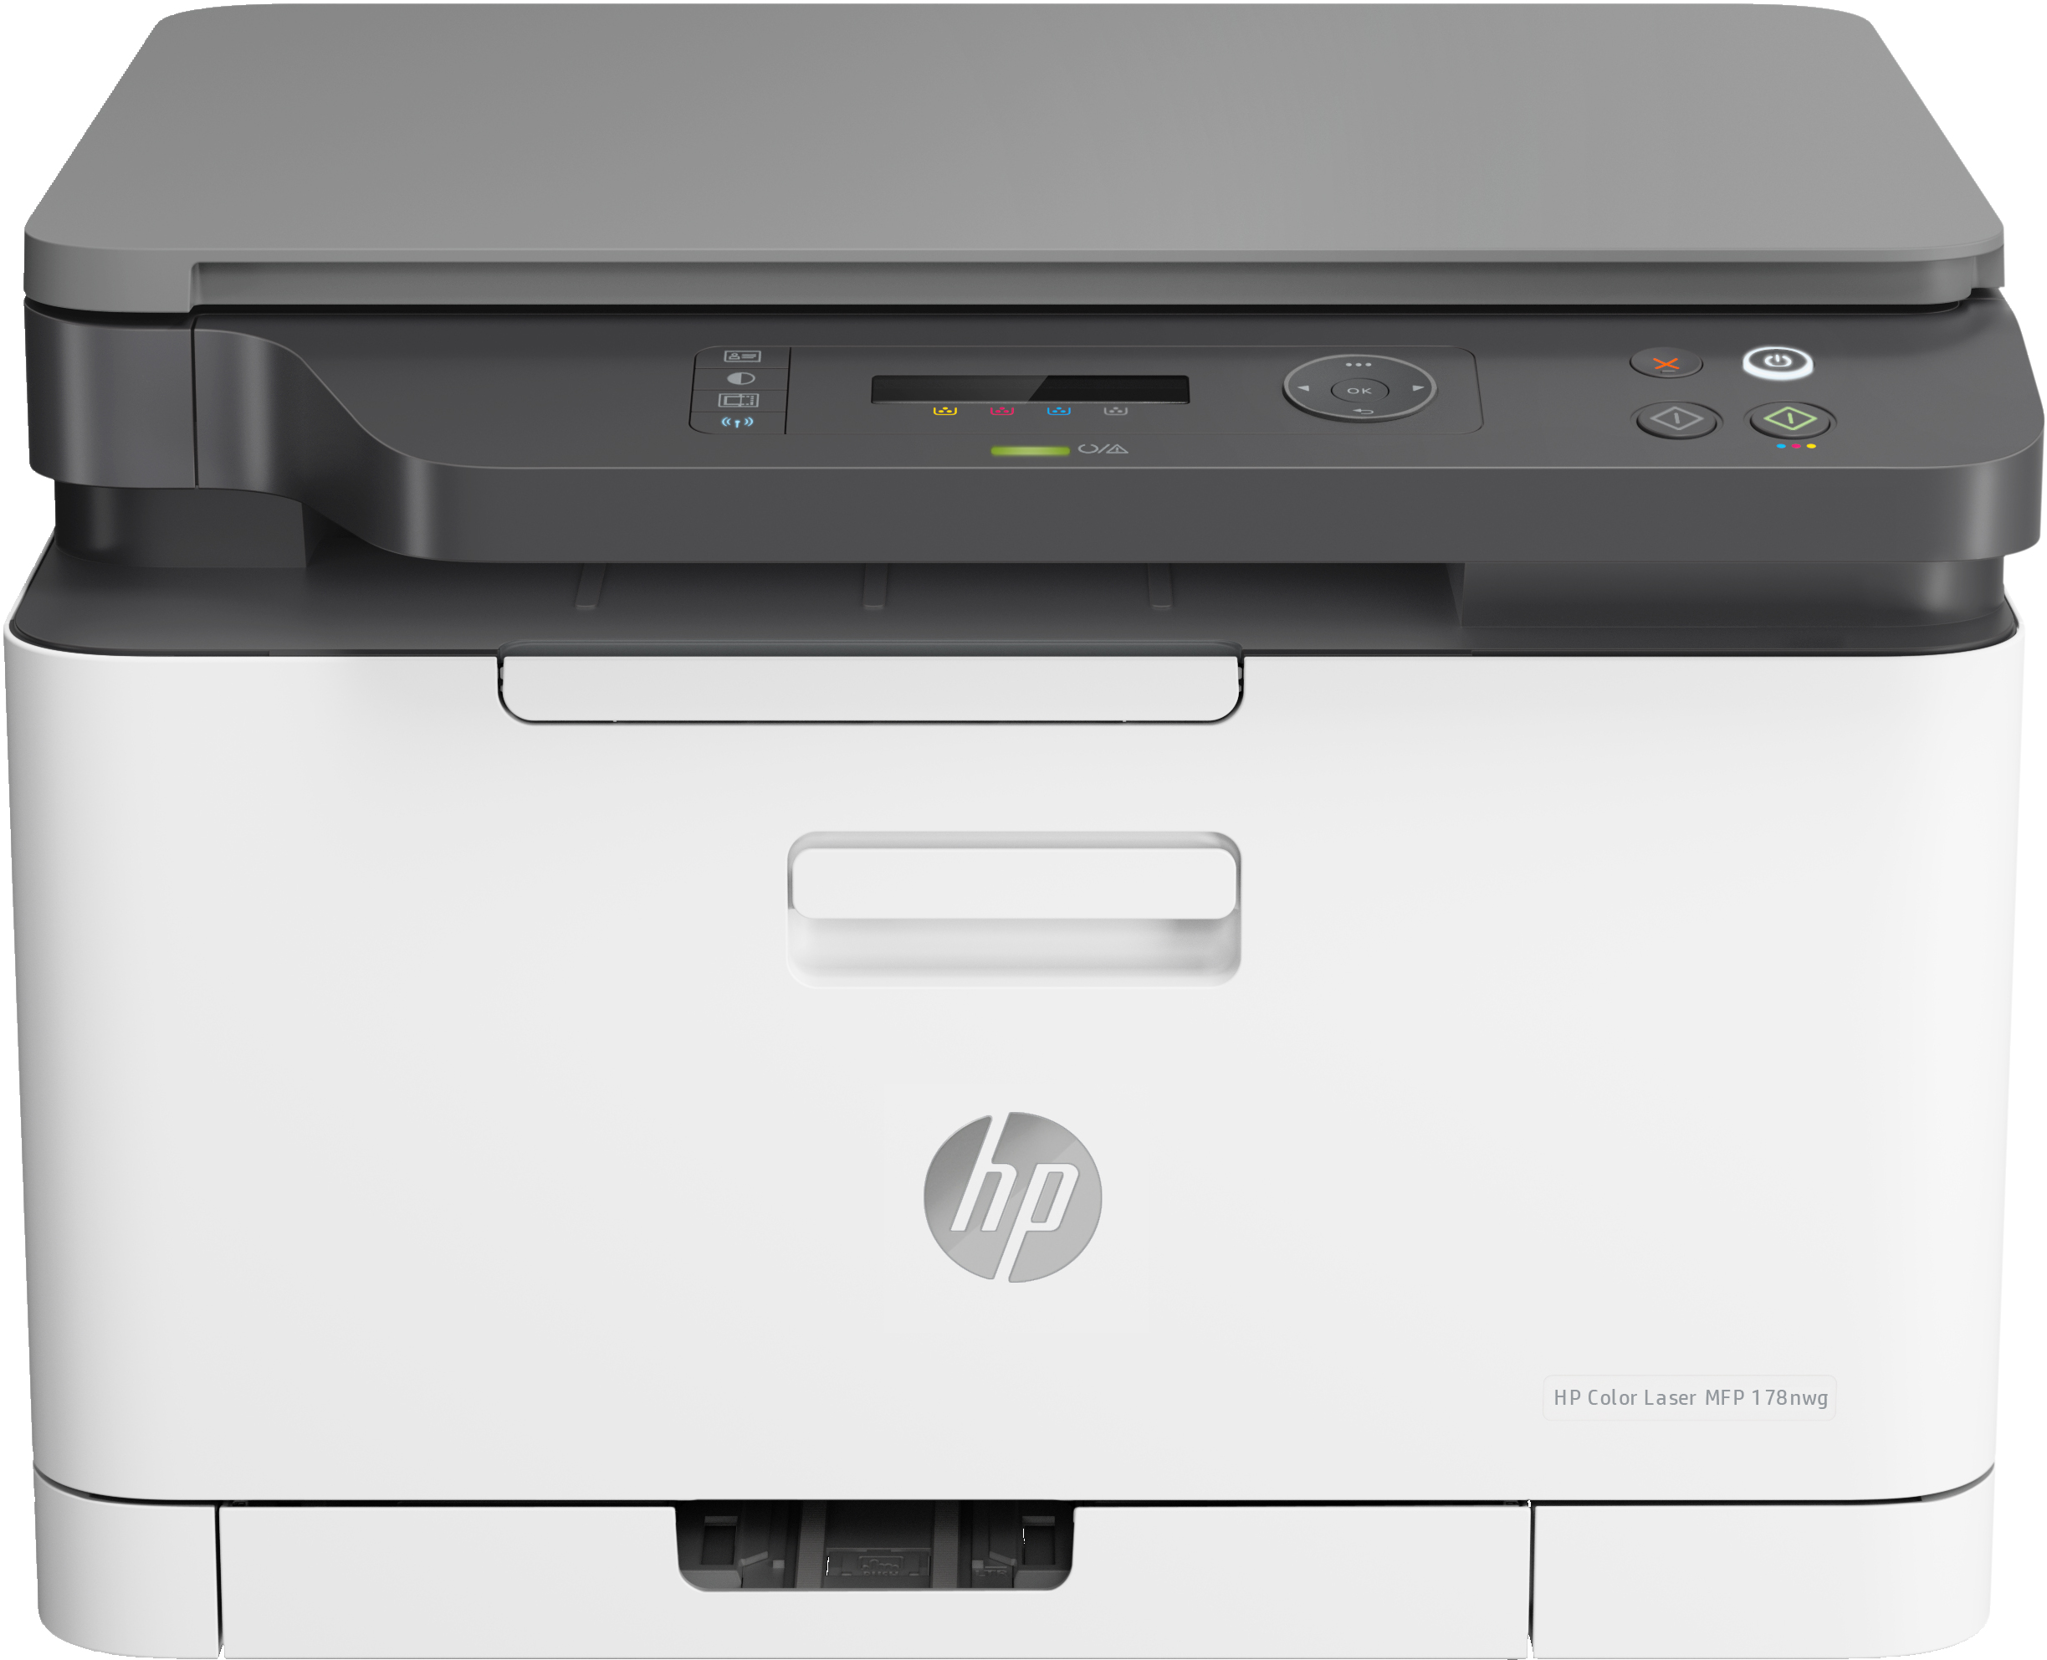 Bild von HP Color Laser MFP 178nw, Laser, Farbdruck, 600 x 600 DPI, A4, Direktdruck, Grau, Weiß